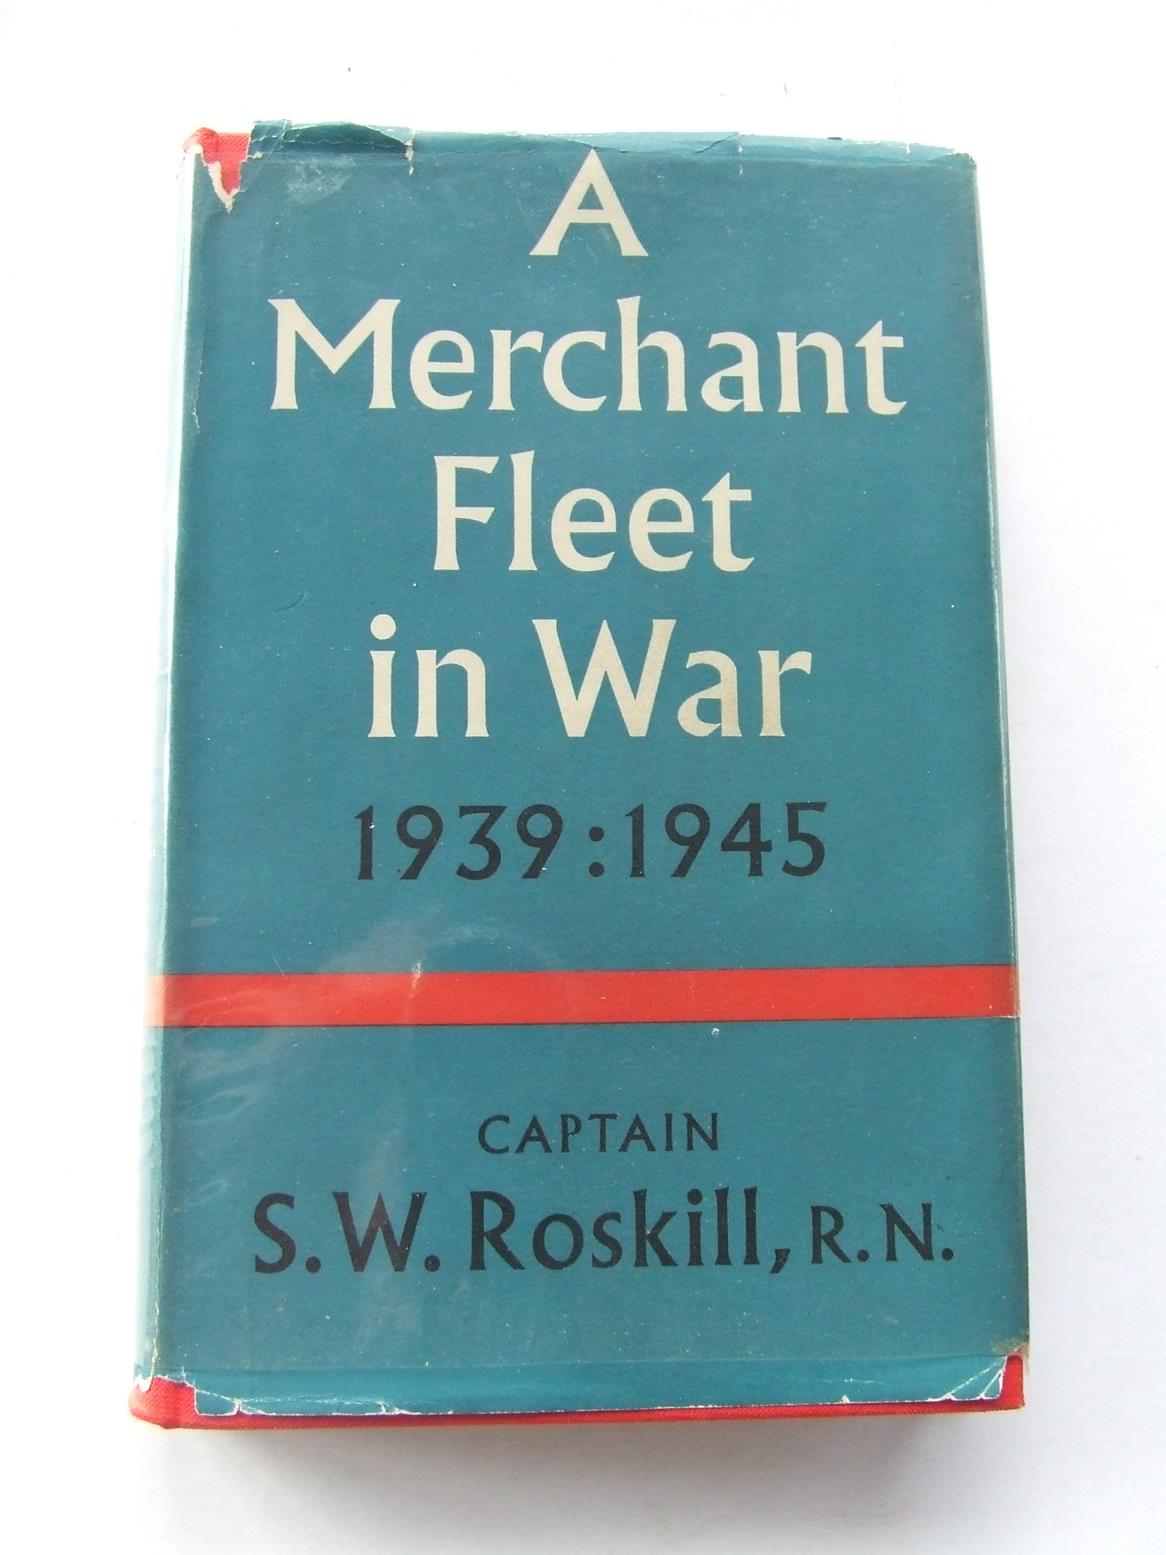 Merchant Fleet in War, Alfred Holt & Co. 1939-1945